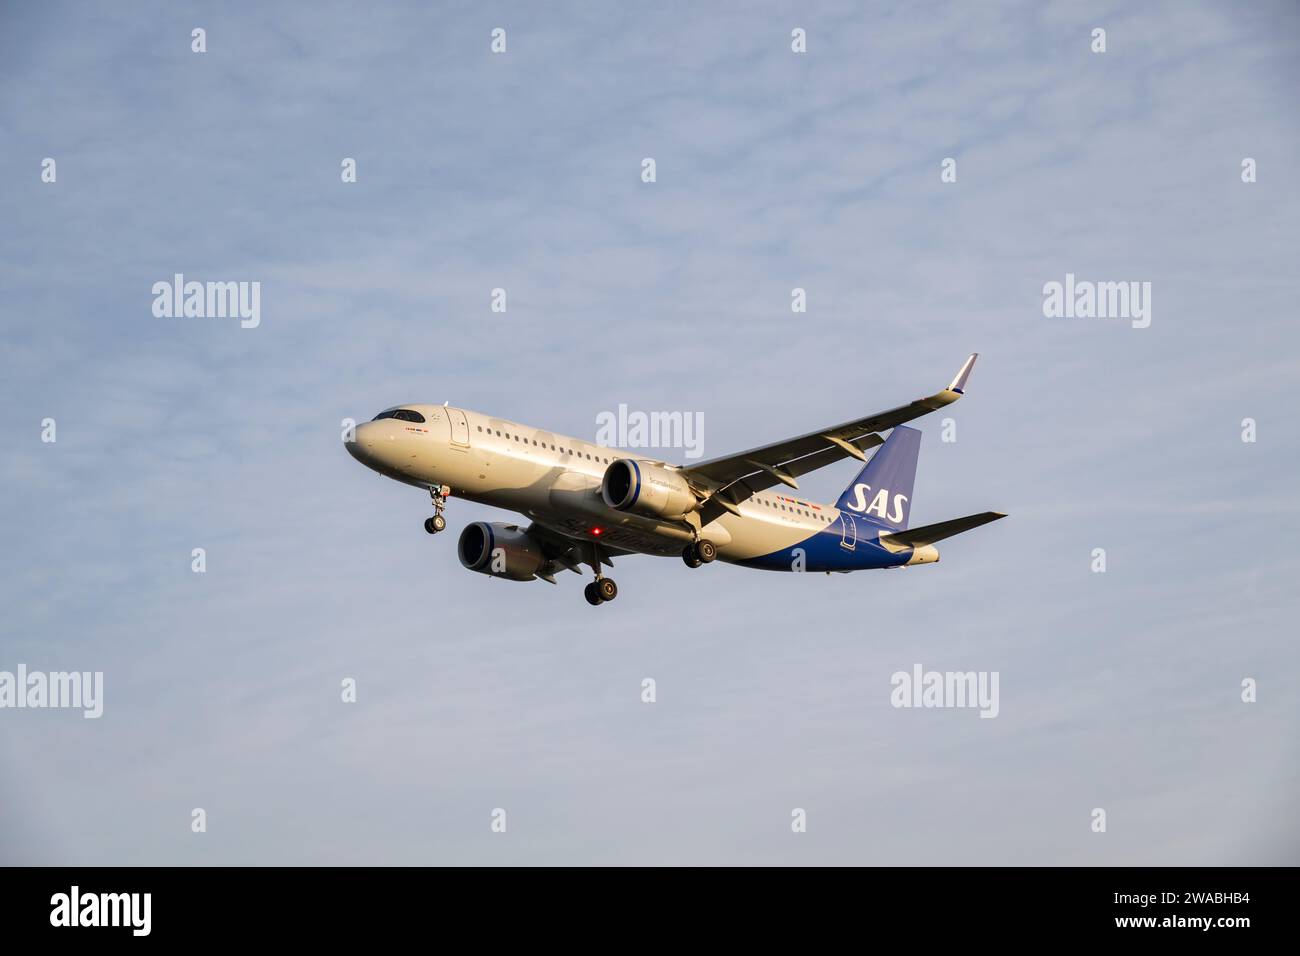 Die skandinavische SAS Airbus A320 Passenger Jet Registration EI-SIK im kurzen Finale für eine Landung auf der Landebahn 27L am Flughafen London Heathrow Stockfoto